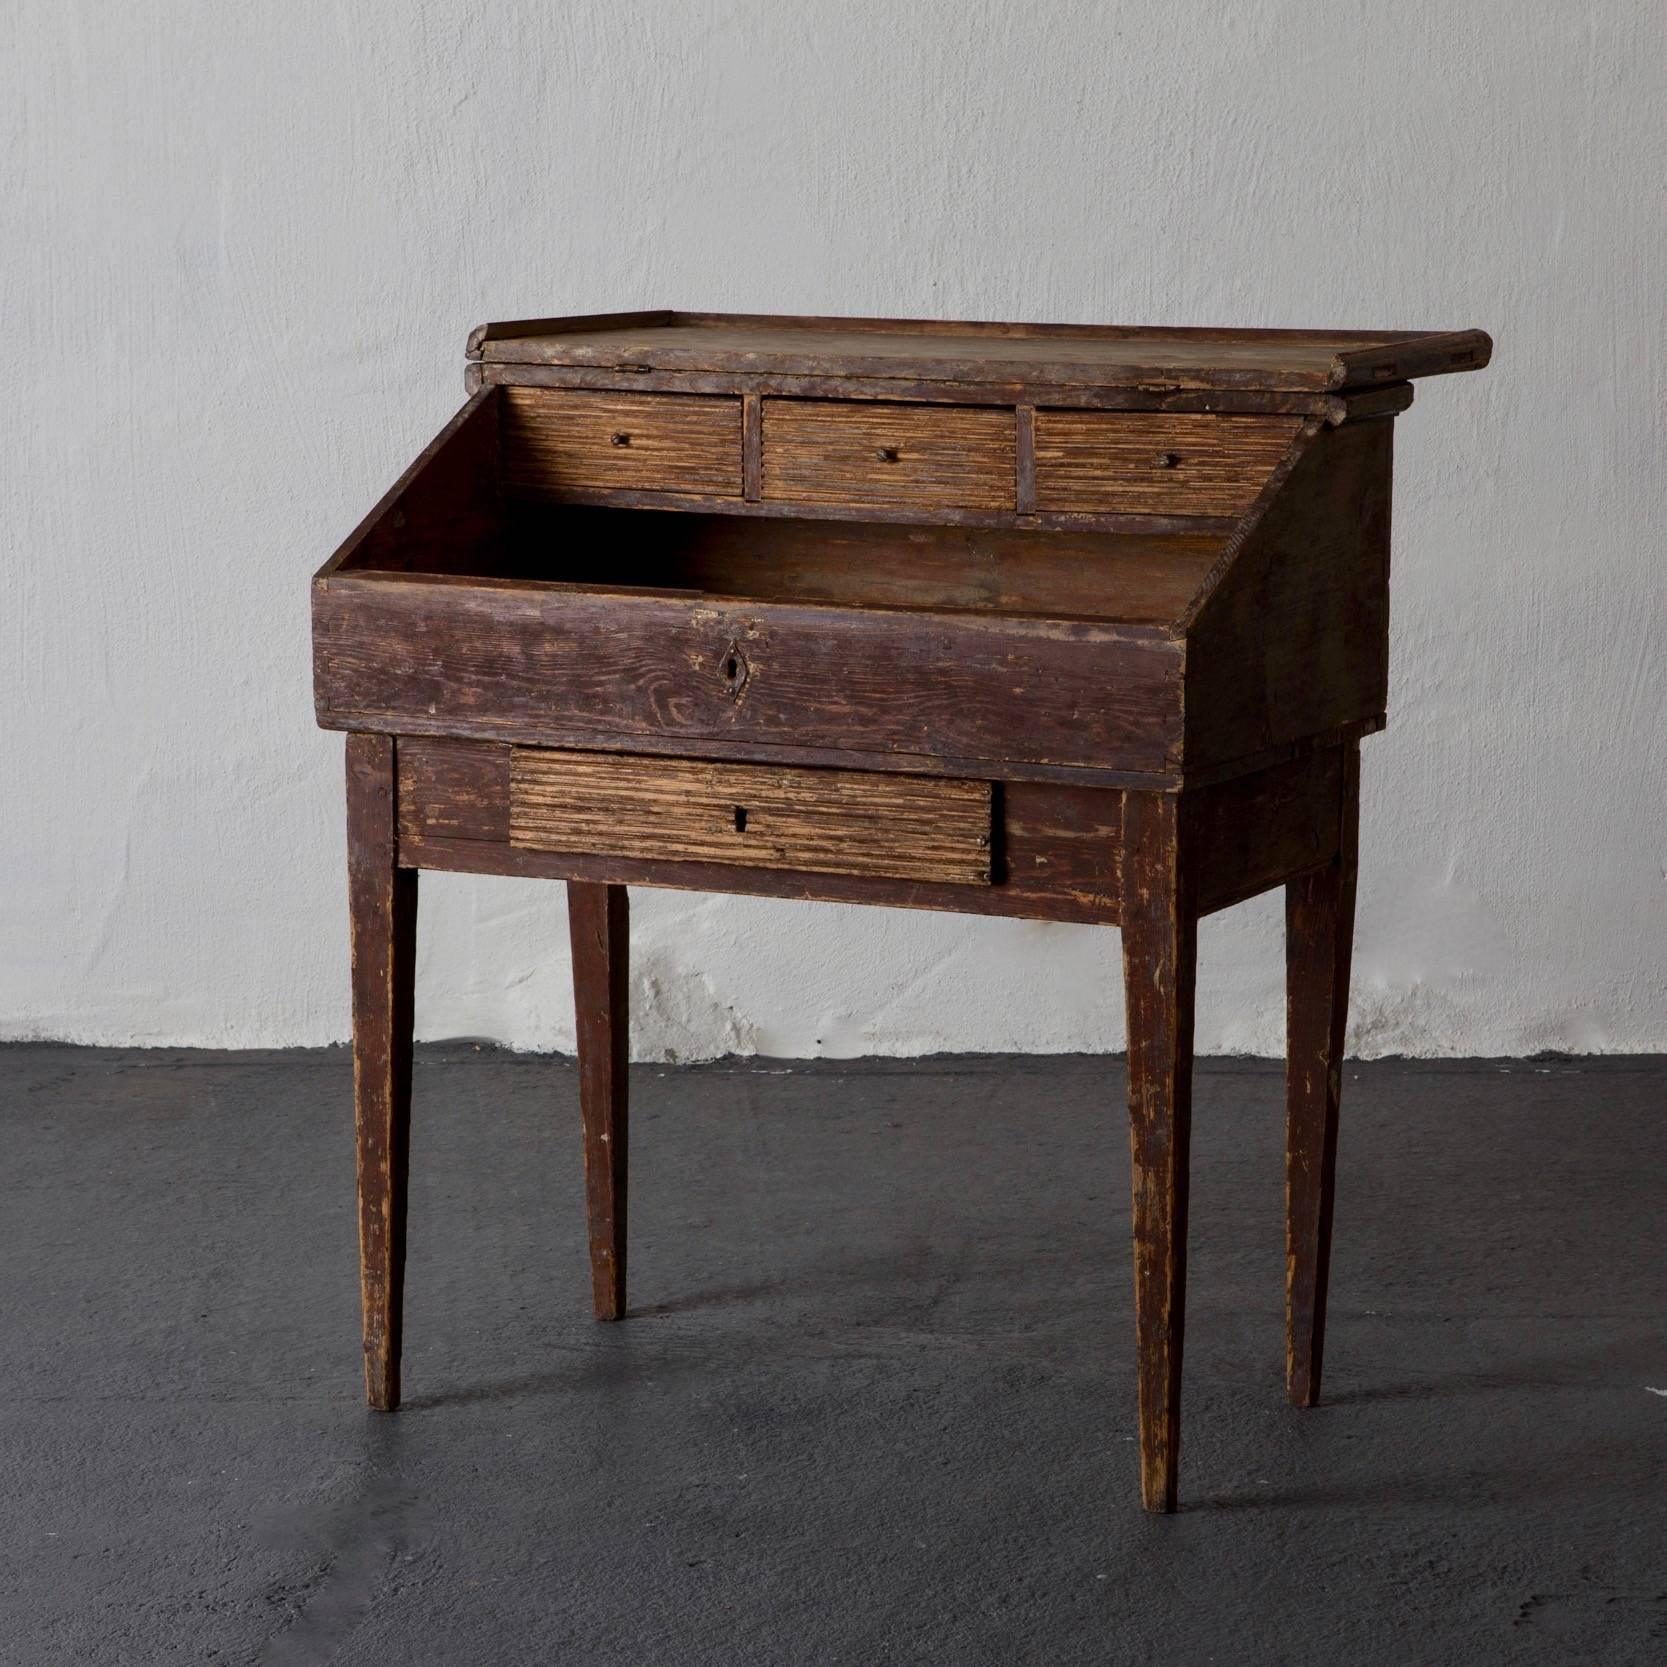 Ein schwedischer Gustavianischer Schreibtisch in Originalfarbe. Verjüngte Beine und eine geriffelte Schublade. Innenraum mit 3 geriffelten Schubladen.